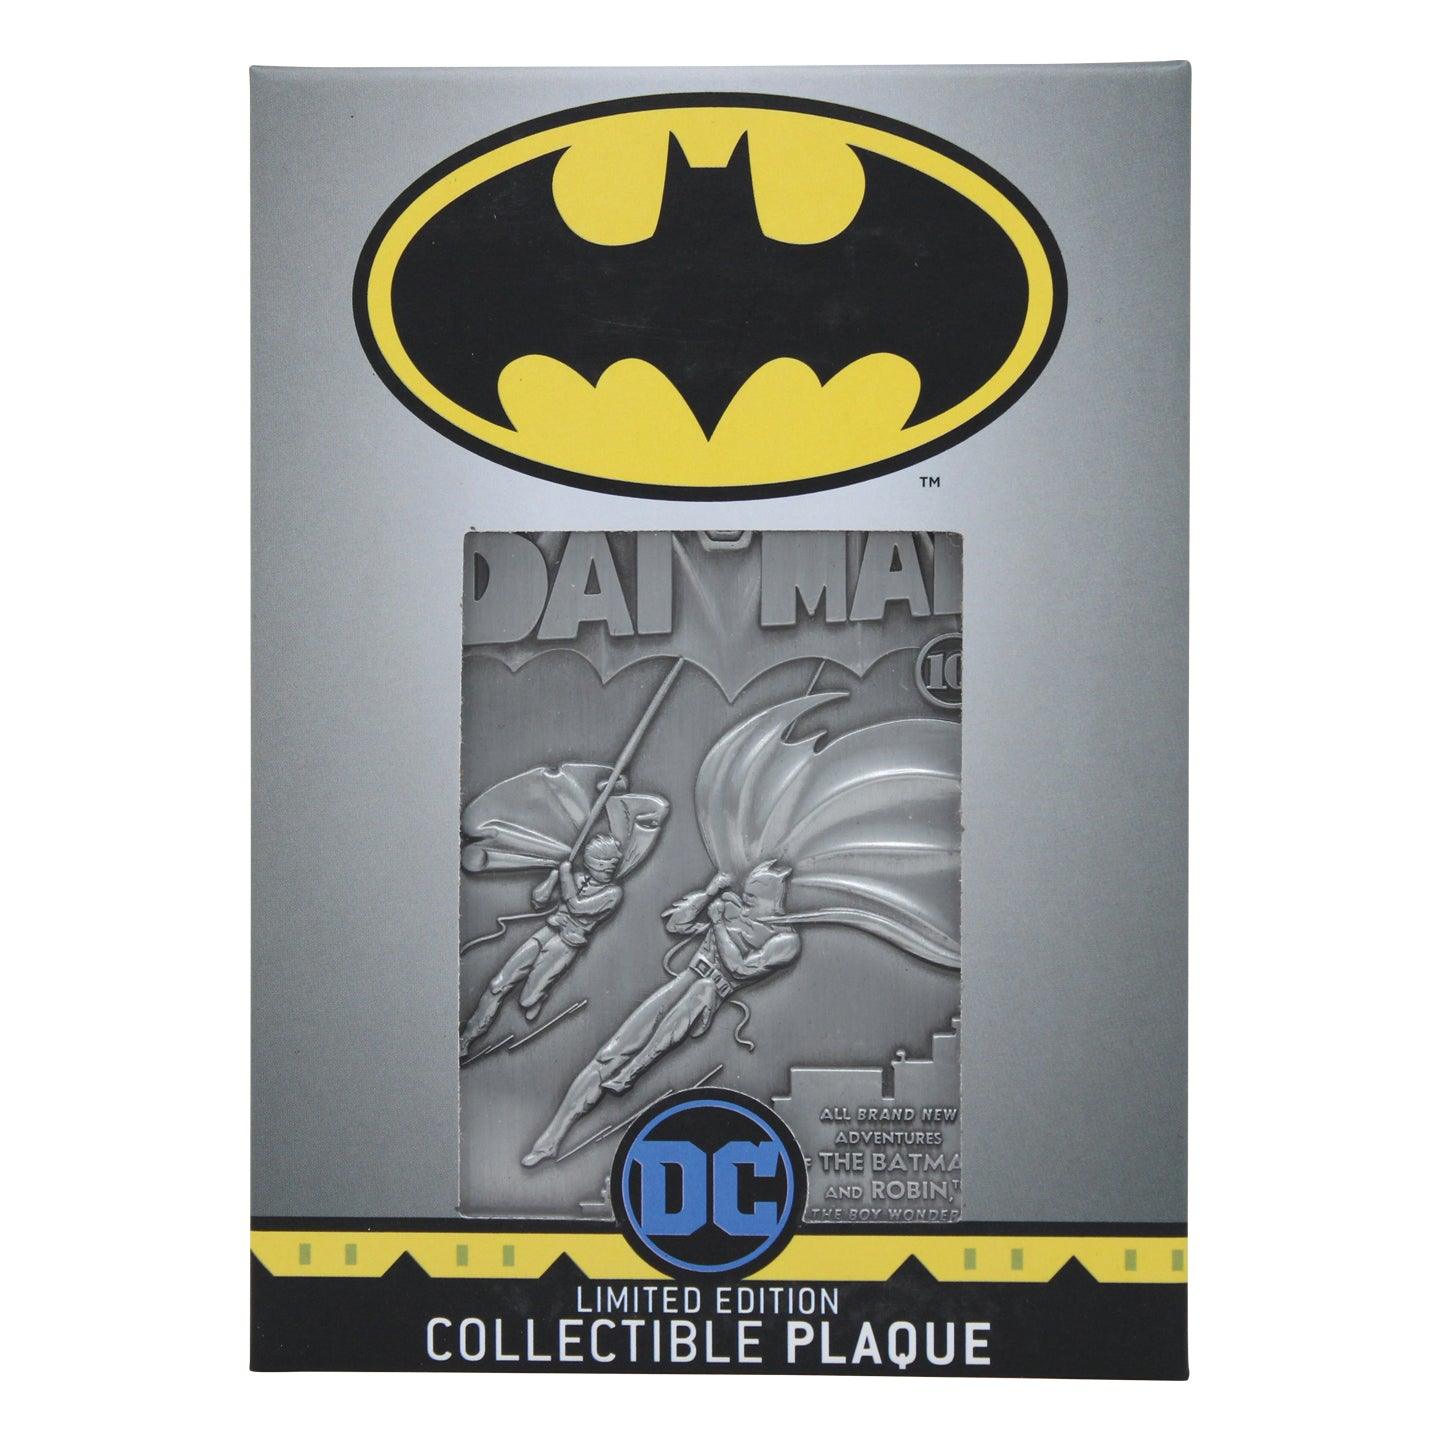 Plaque Dc Batman - Want a New Gadget